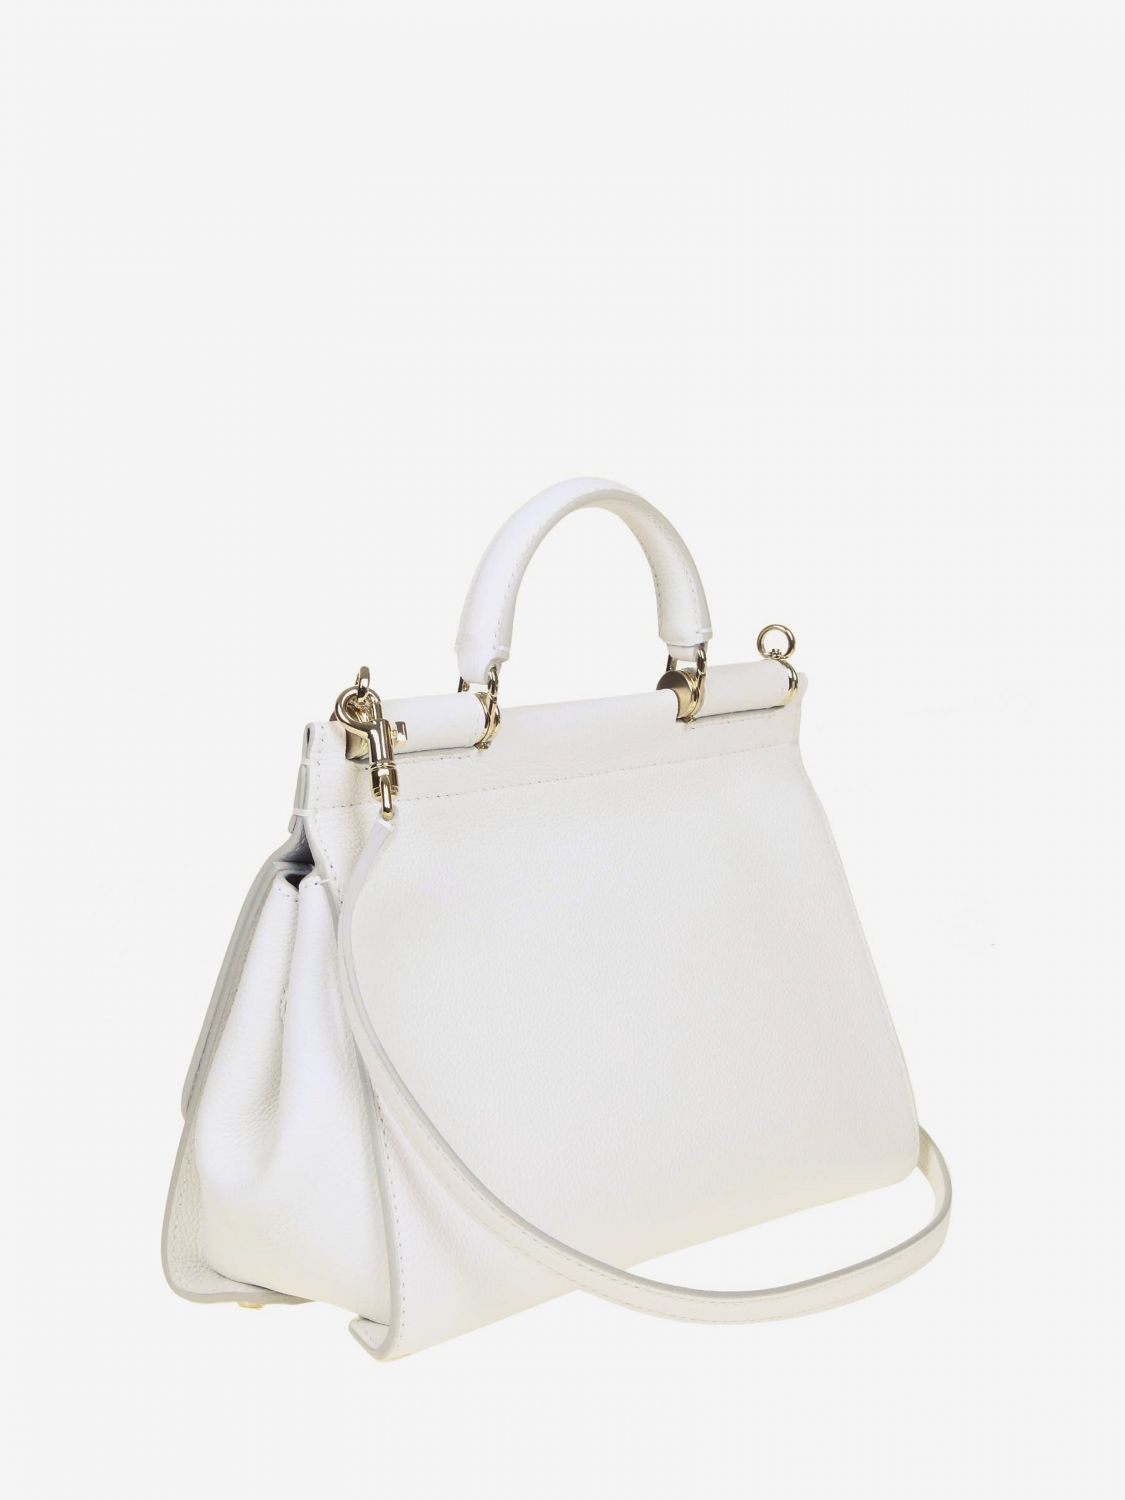 Handbag women Dolce & Gabbana | Handbag Dolce & Gabbana Women White ...